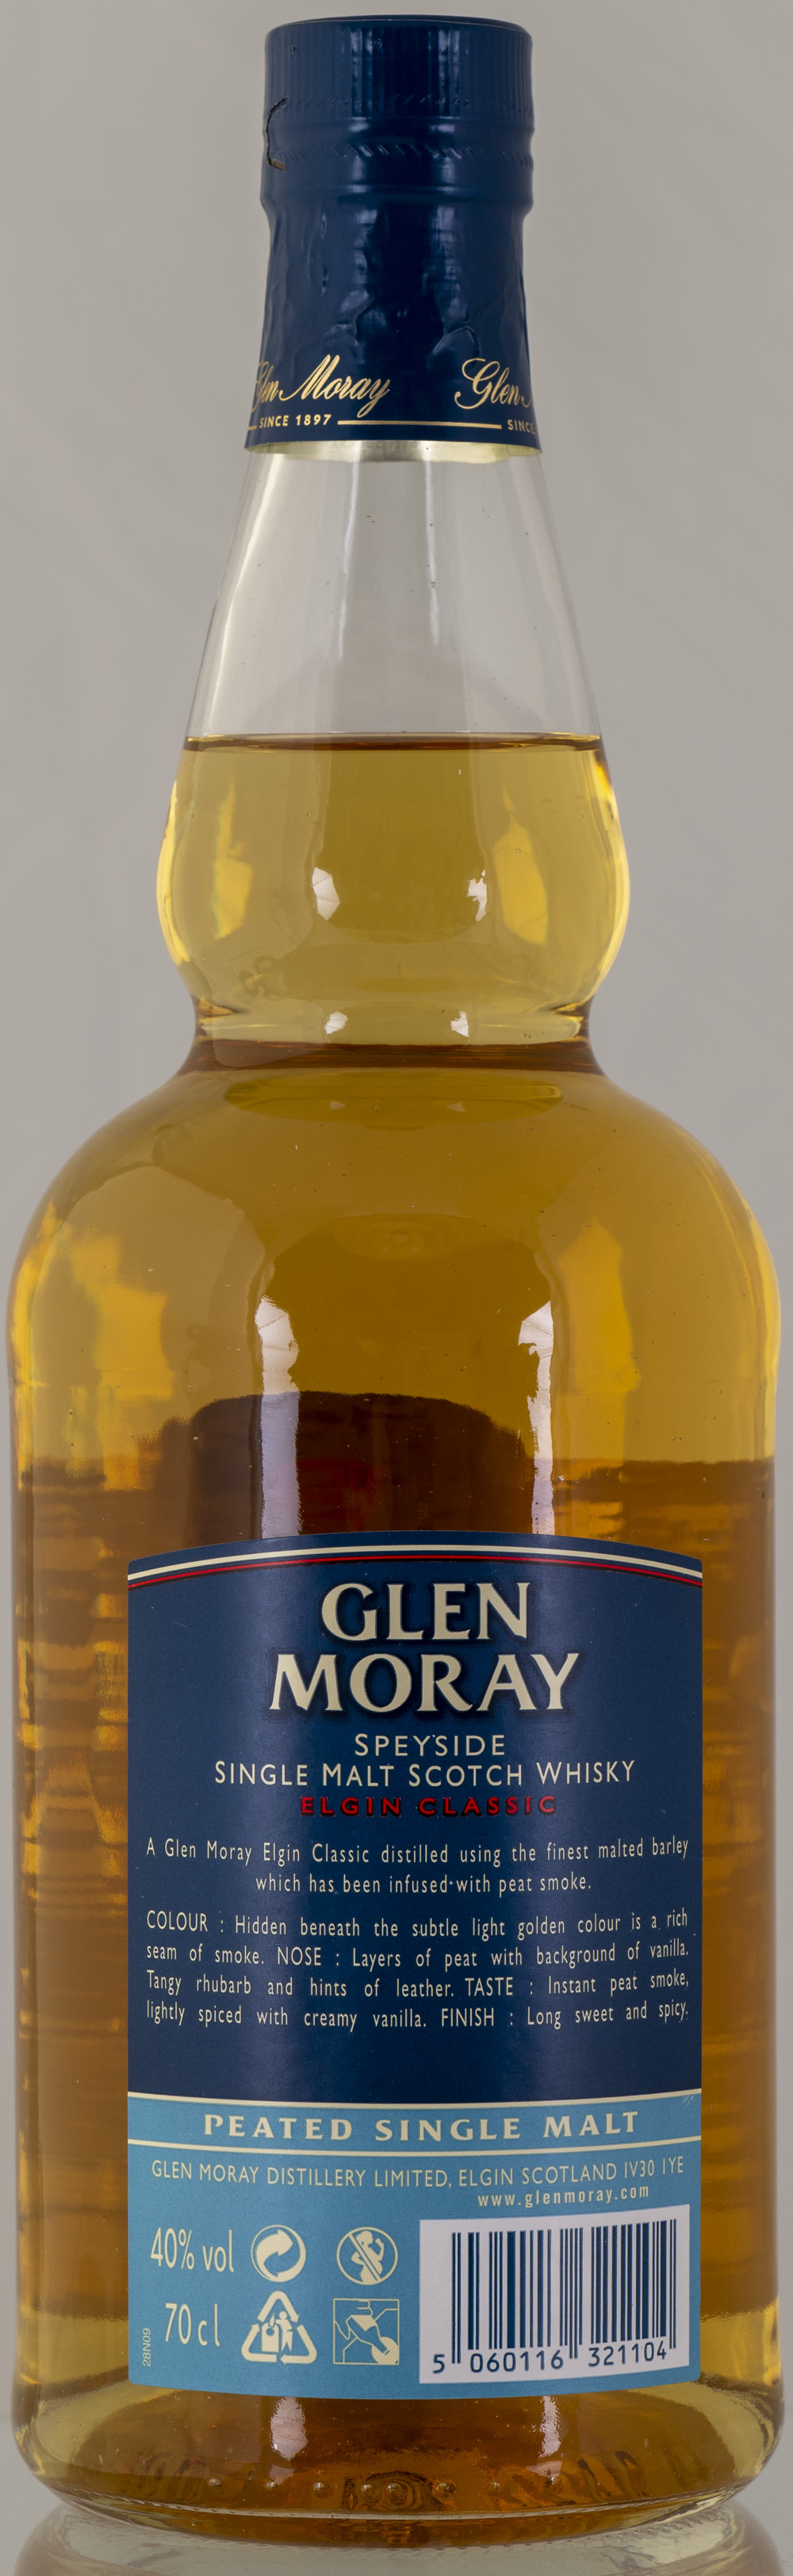 Billede: PHC_2273 - Glen Moray - Elgin Classic Peated - bottle back.jpg